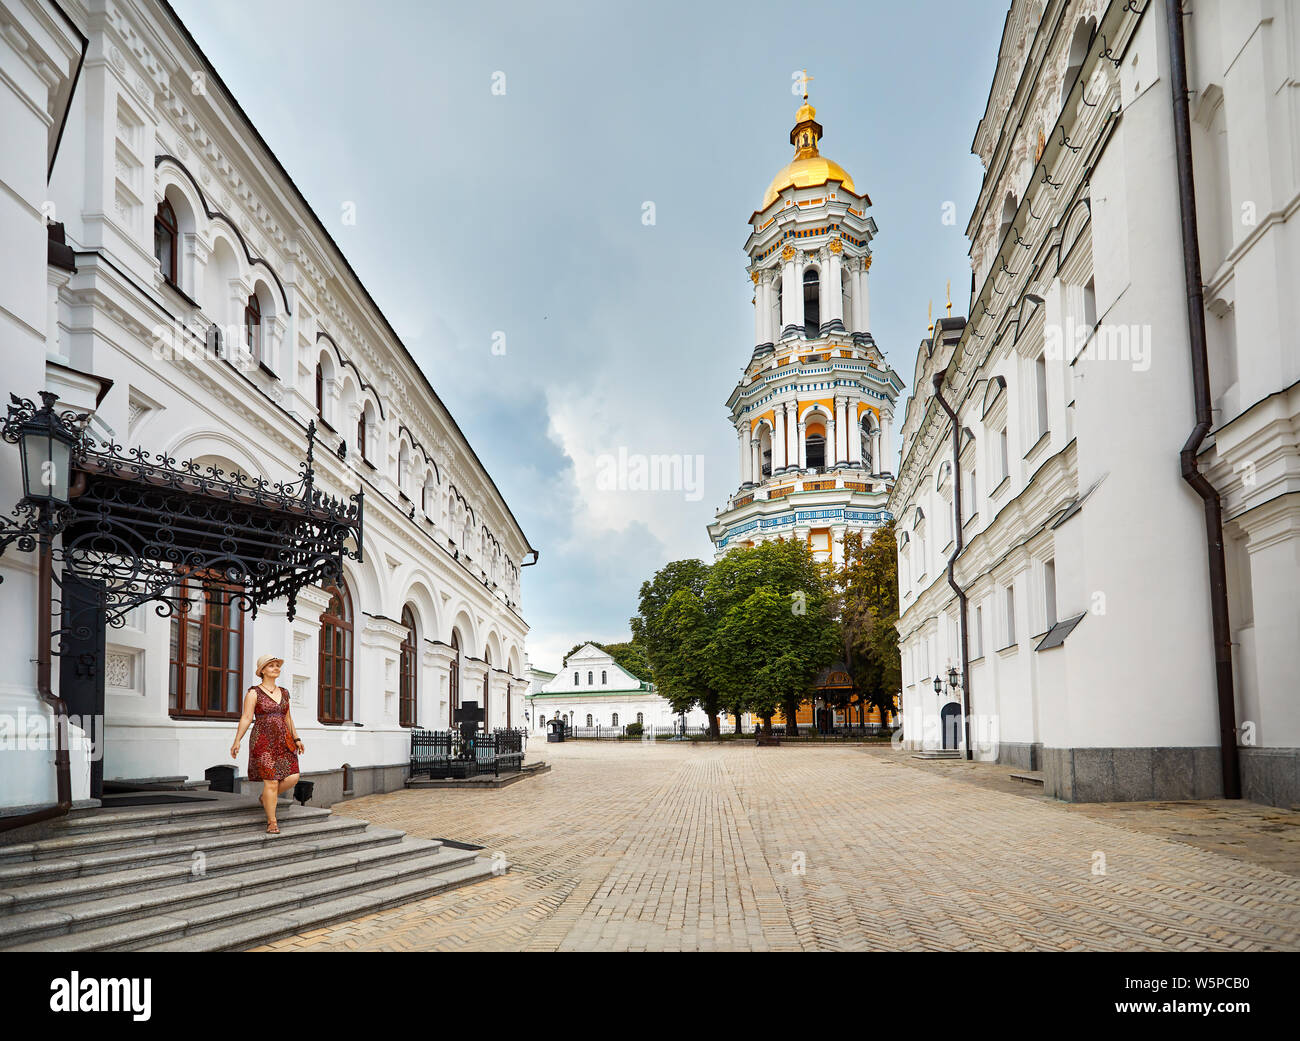 Junge touristische Frau wandern in der Nähe von Bell Tower mit goldenen Kuppel in Kiew Pechersk Lavra Christian komplex. Alte historische Architektur in Kiew, Ukraine Stockfoto